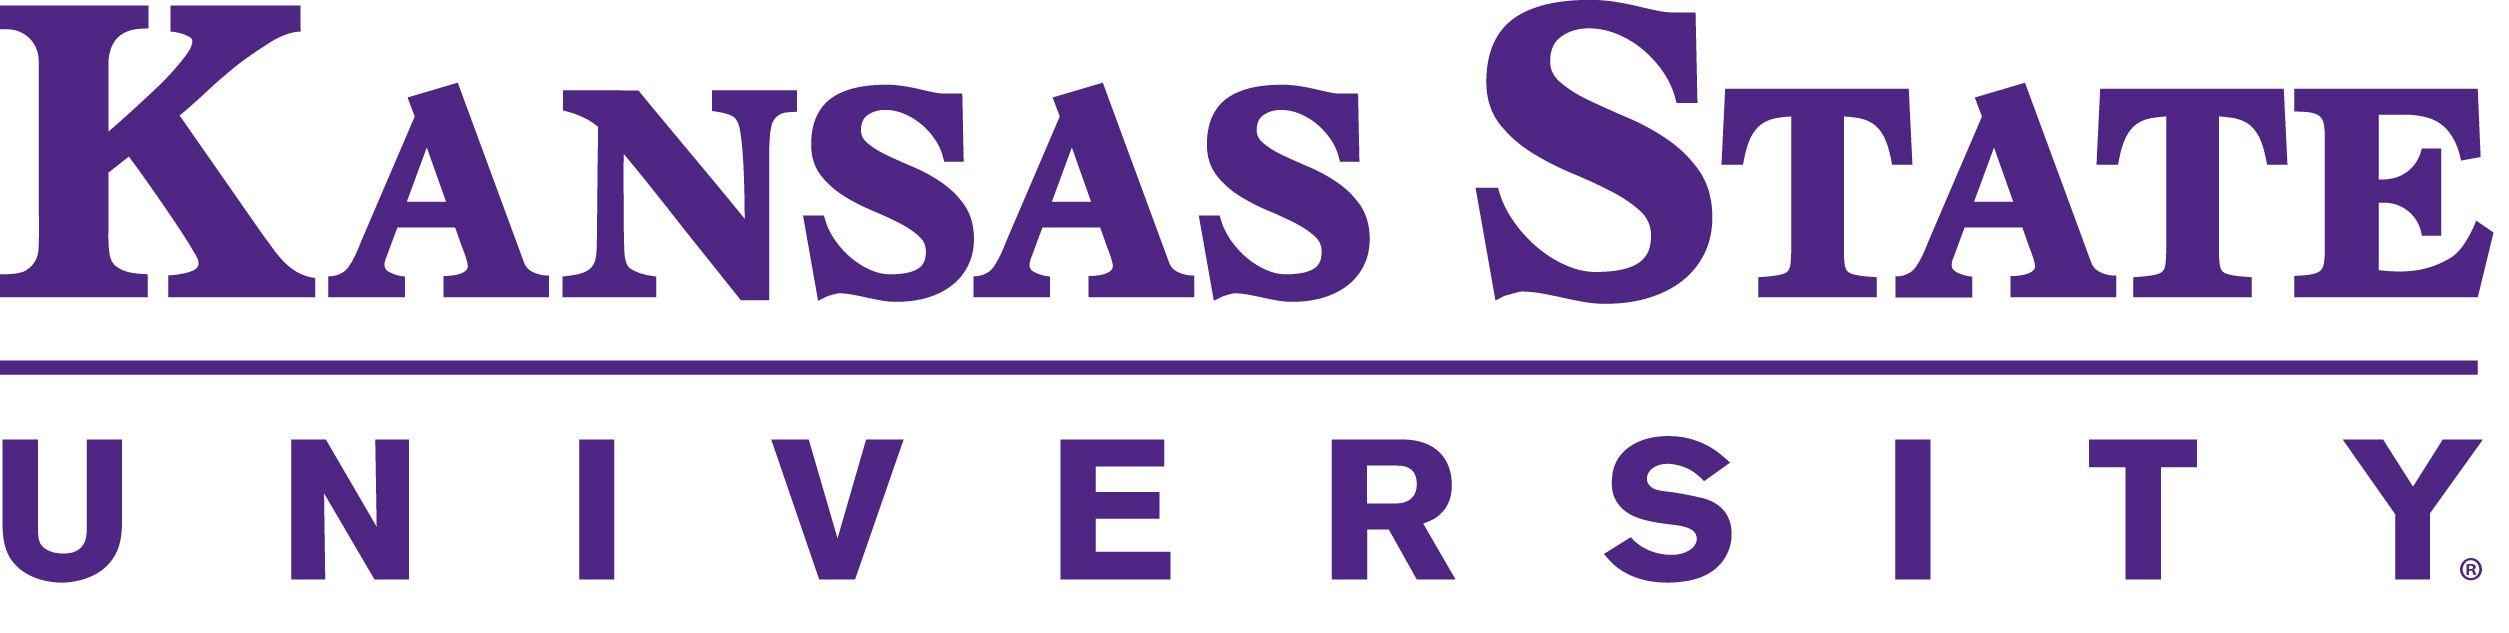 Kansas State Logo - K-State Engineering Digital Resources